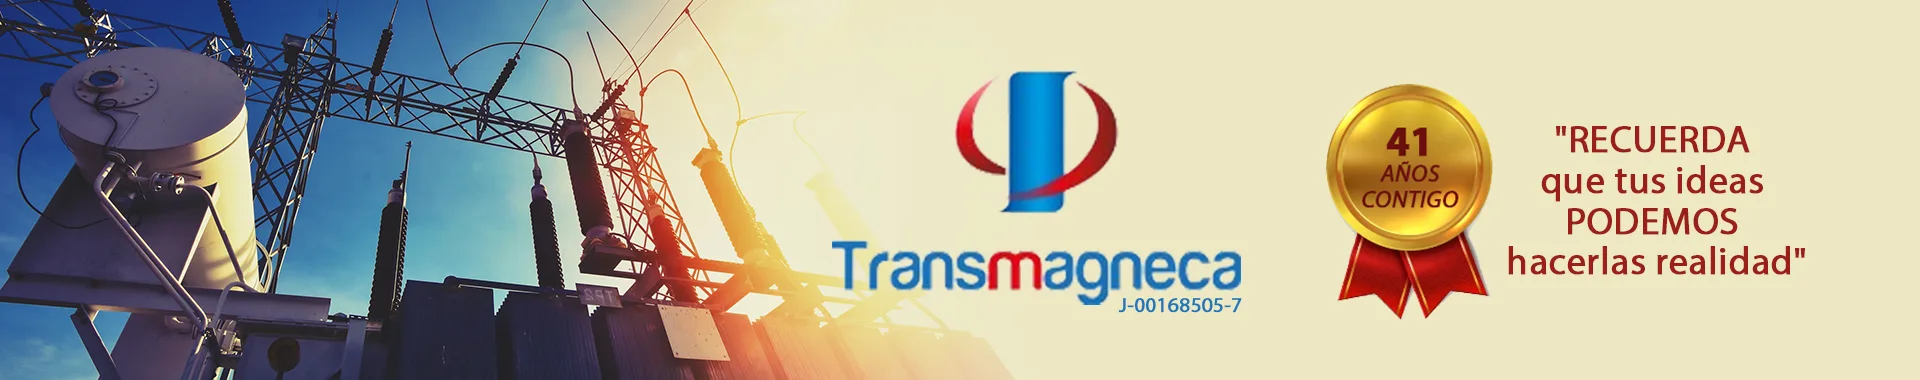 Imagen 1 del perfil de Transmagneca